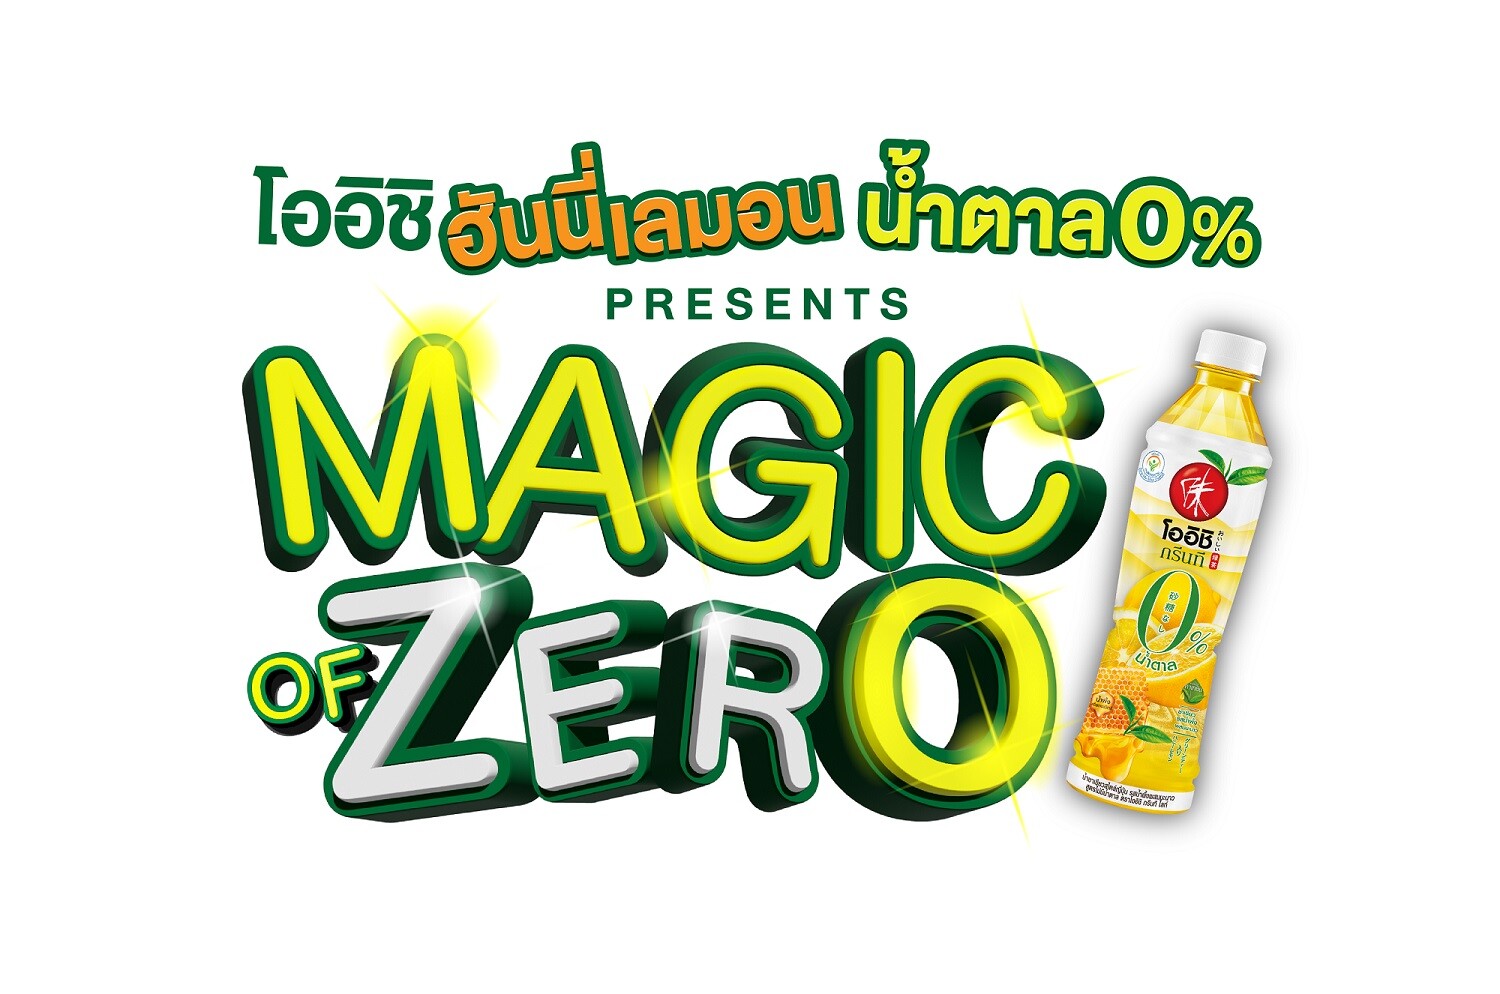 โออิชิ ฮันนี่เลมอน น้ำตาล 0% จับมือ GMM TV จัดแถลงข่าวเปิดตัวซีรี่ส์ "Magic of Zero"